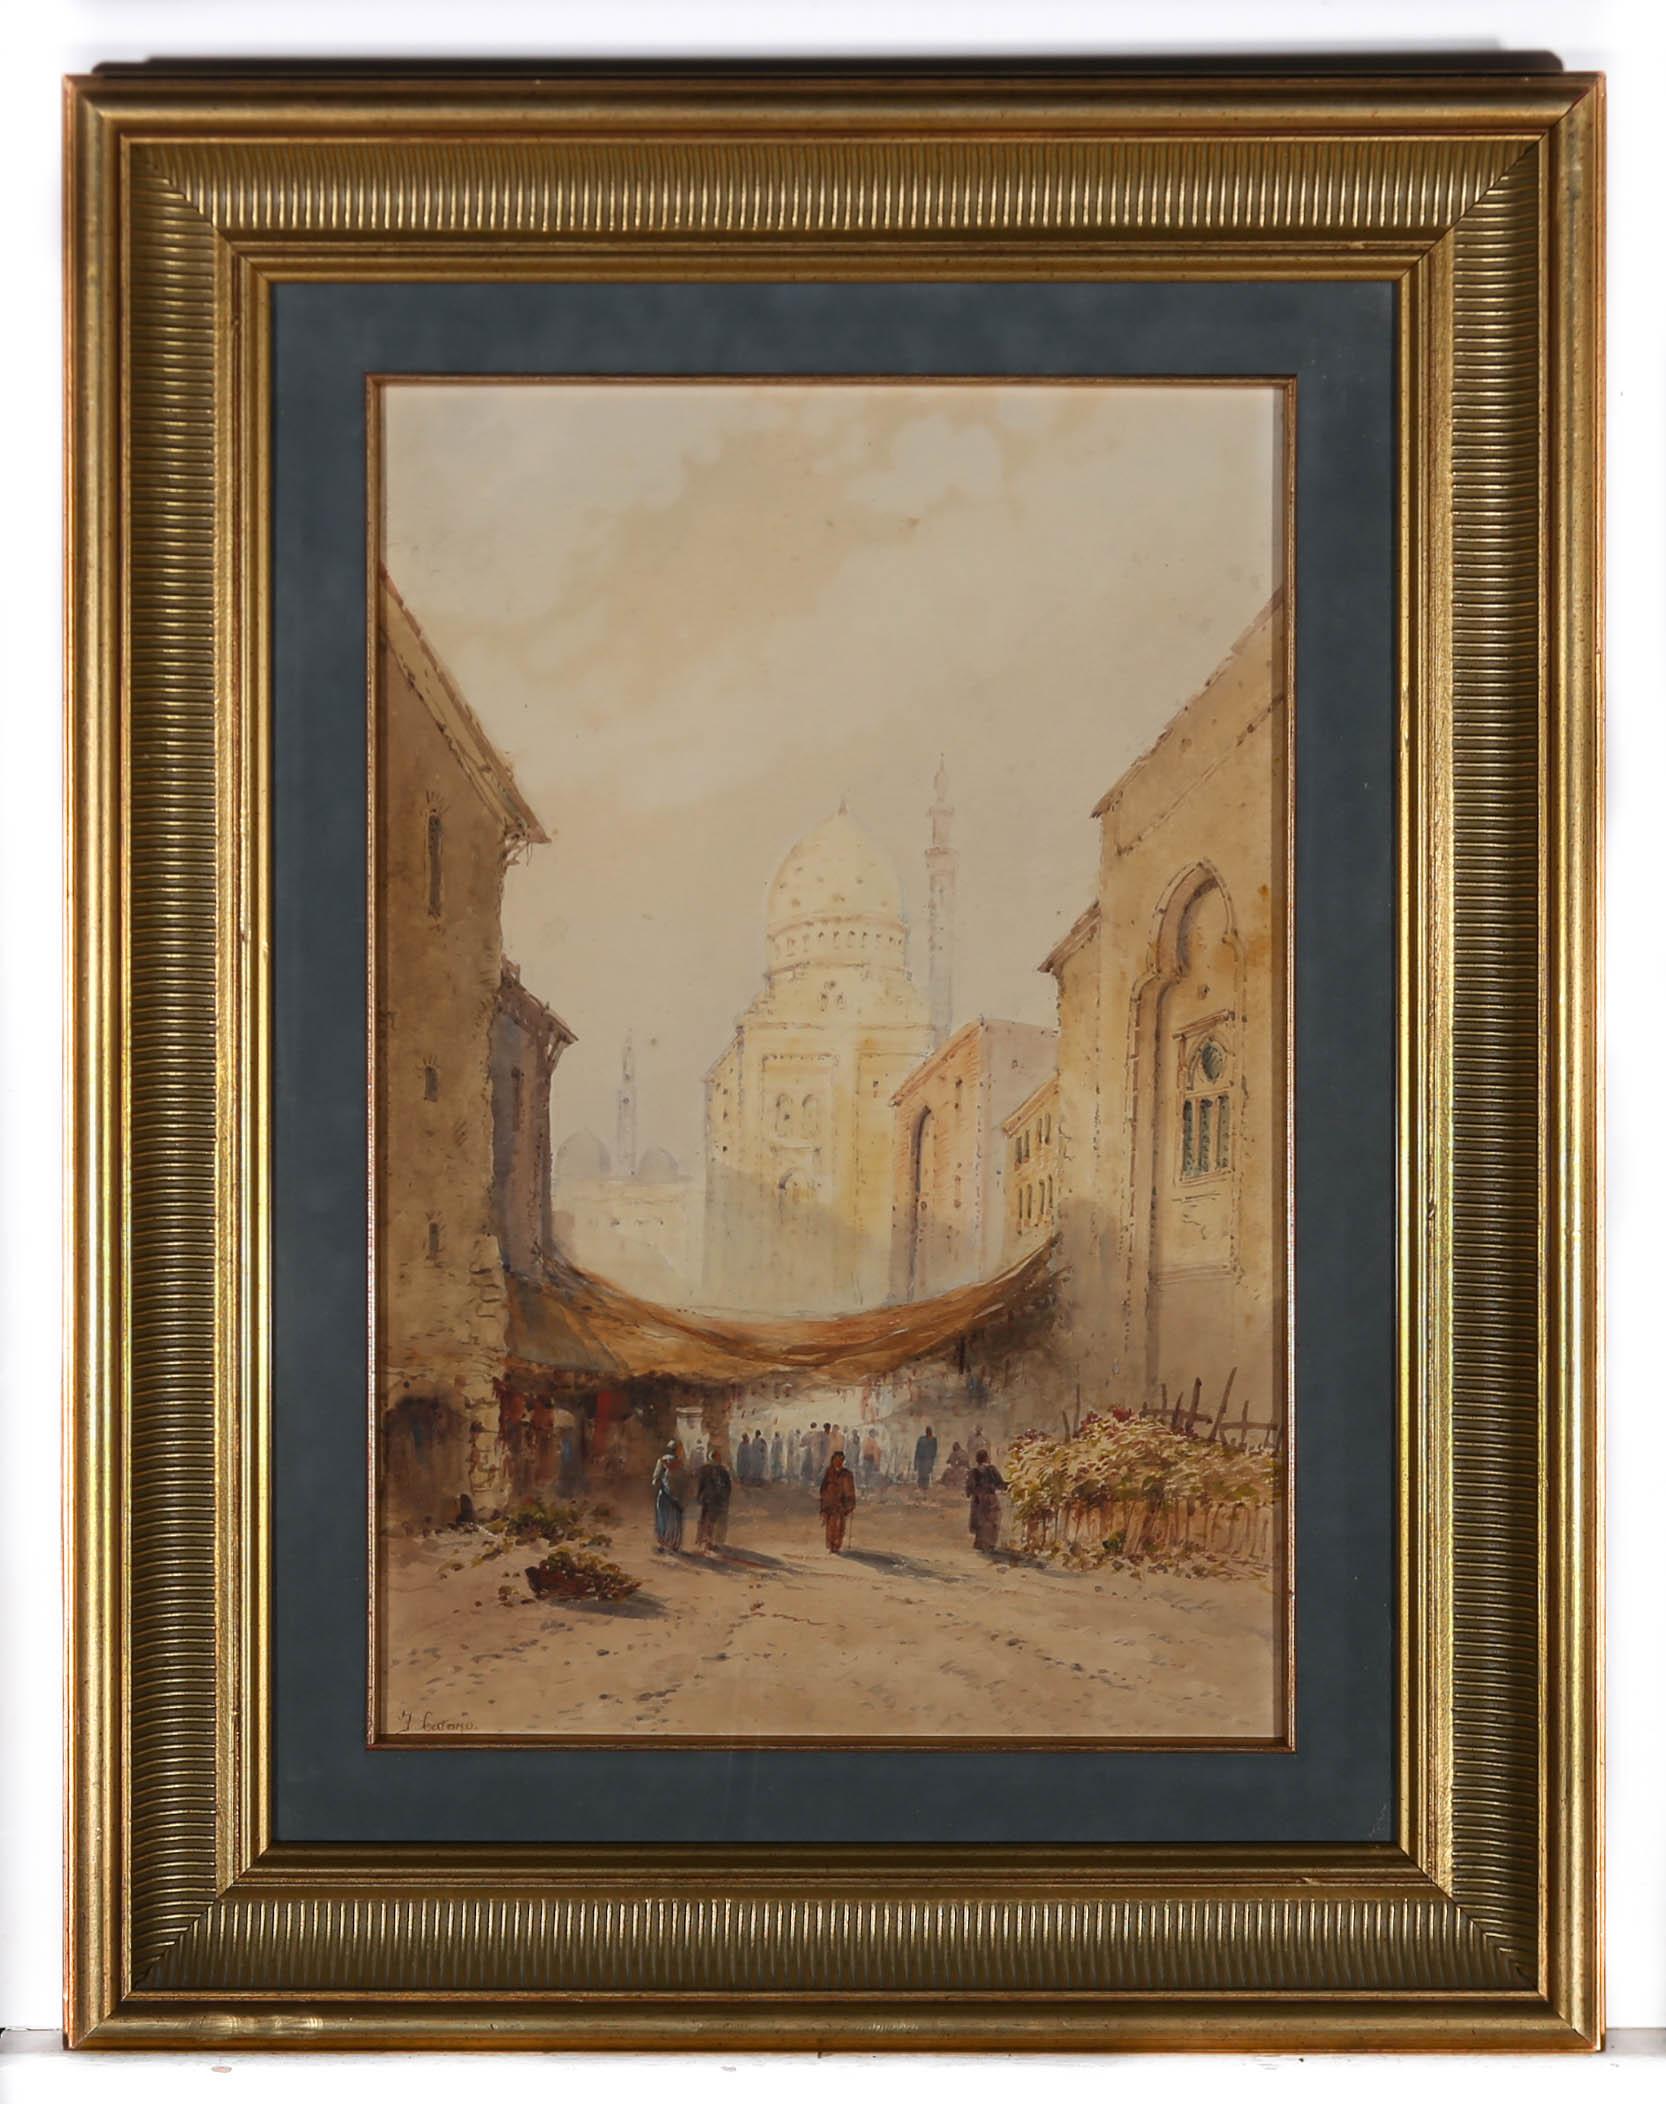 Frank Catano (fl.1880-1920) - Framed Watercolour, Cairo City Market 1